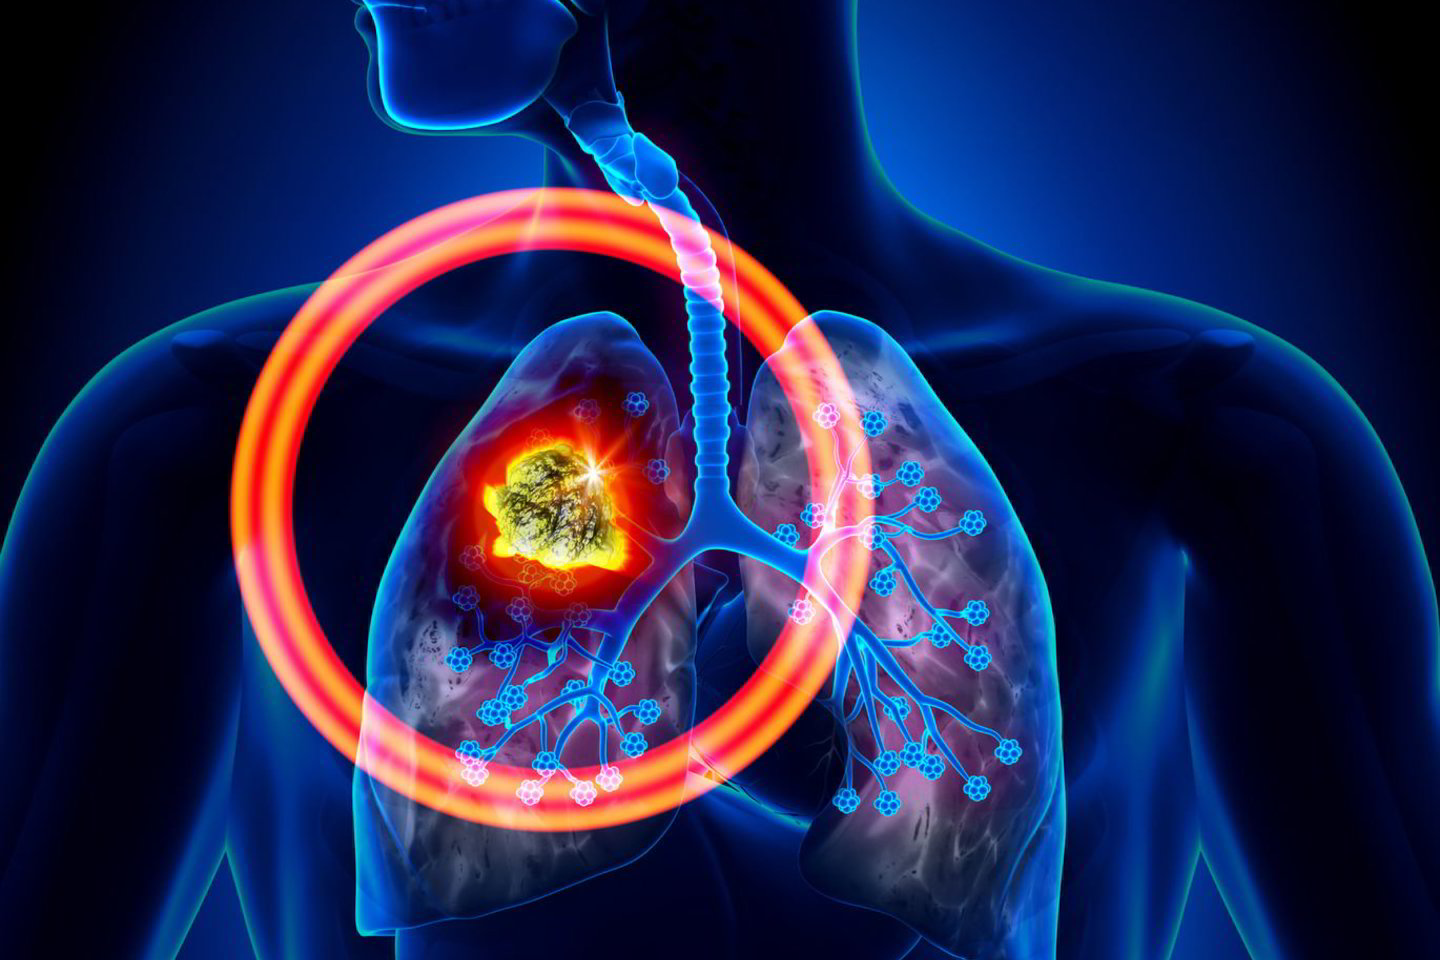  Plaučių vėžys bei širdies smūgis yra kone pavojingiausias šalutinis rūkymo poveikis.<br> 123rf.com nuotr.